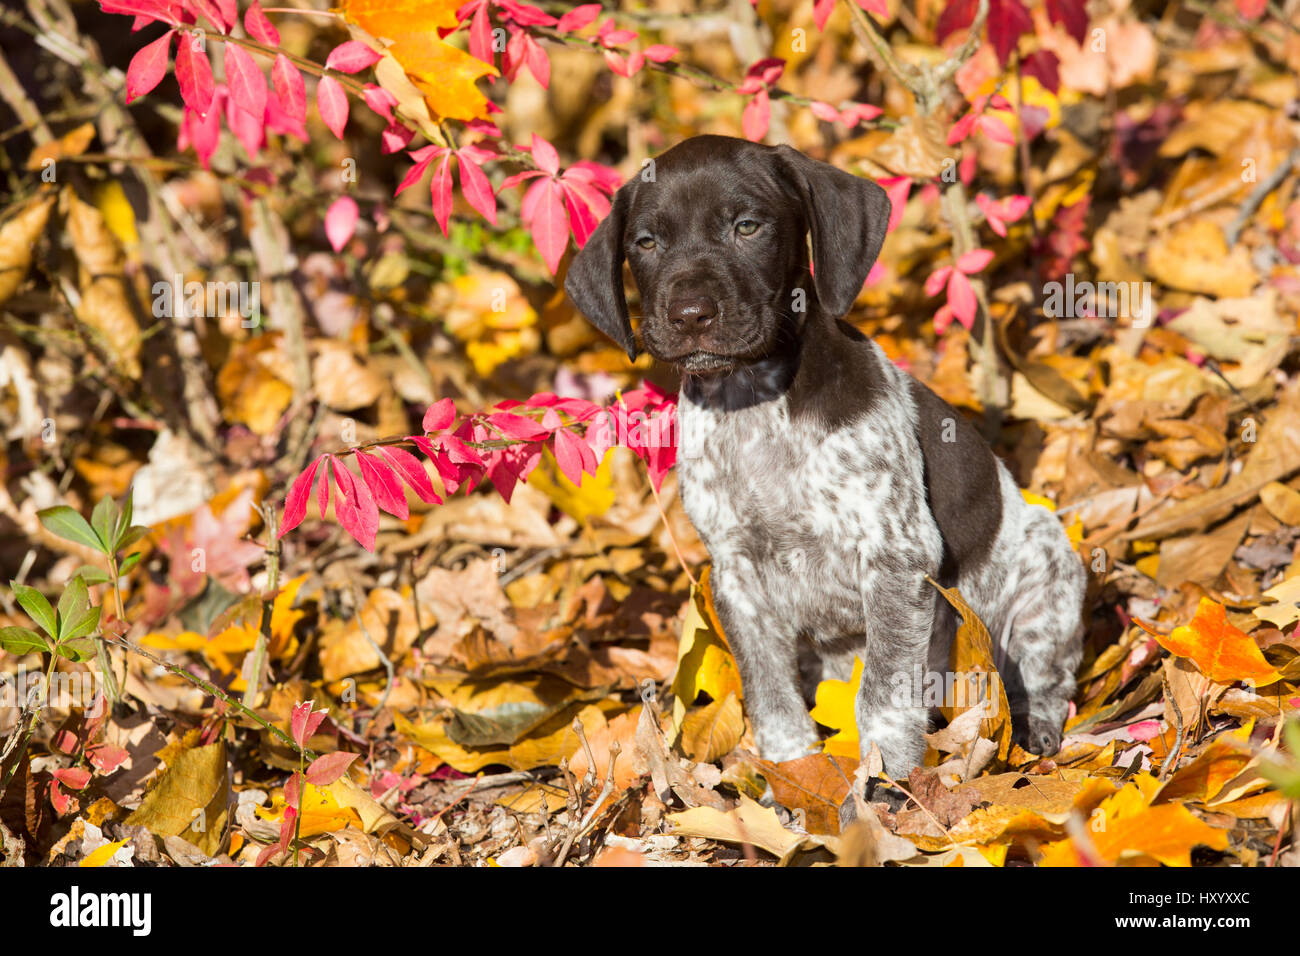 Retrato de Braco Alemán interna pup en otoño. Pomfret, Connecticut, EE.UU. De octubre. Foto de stock